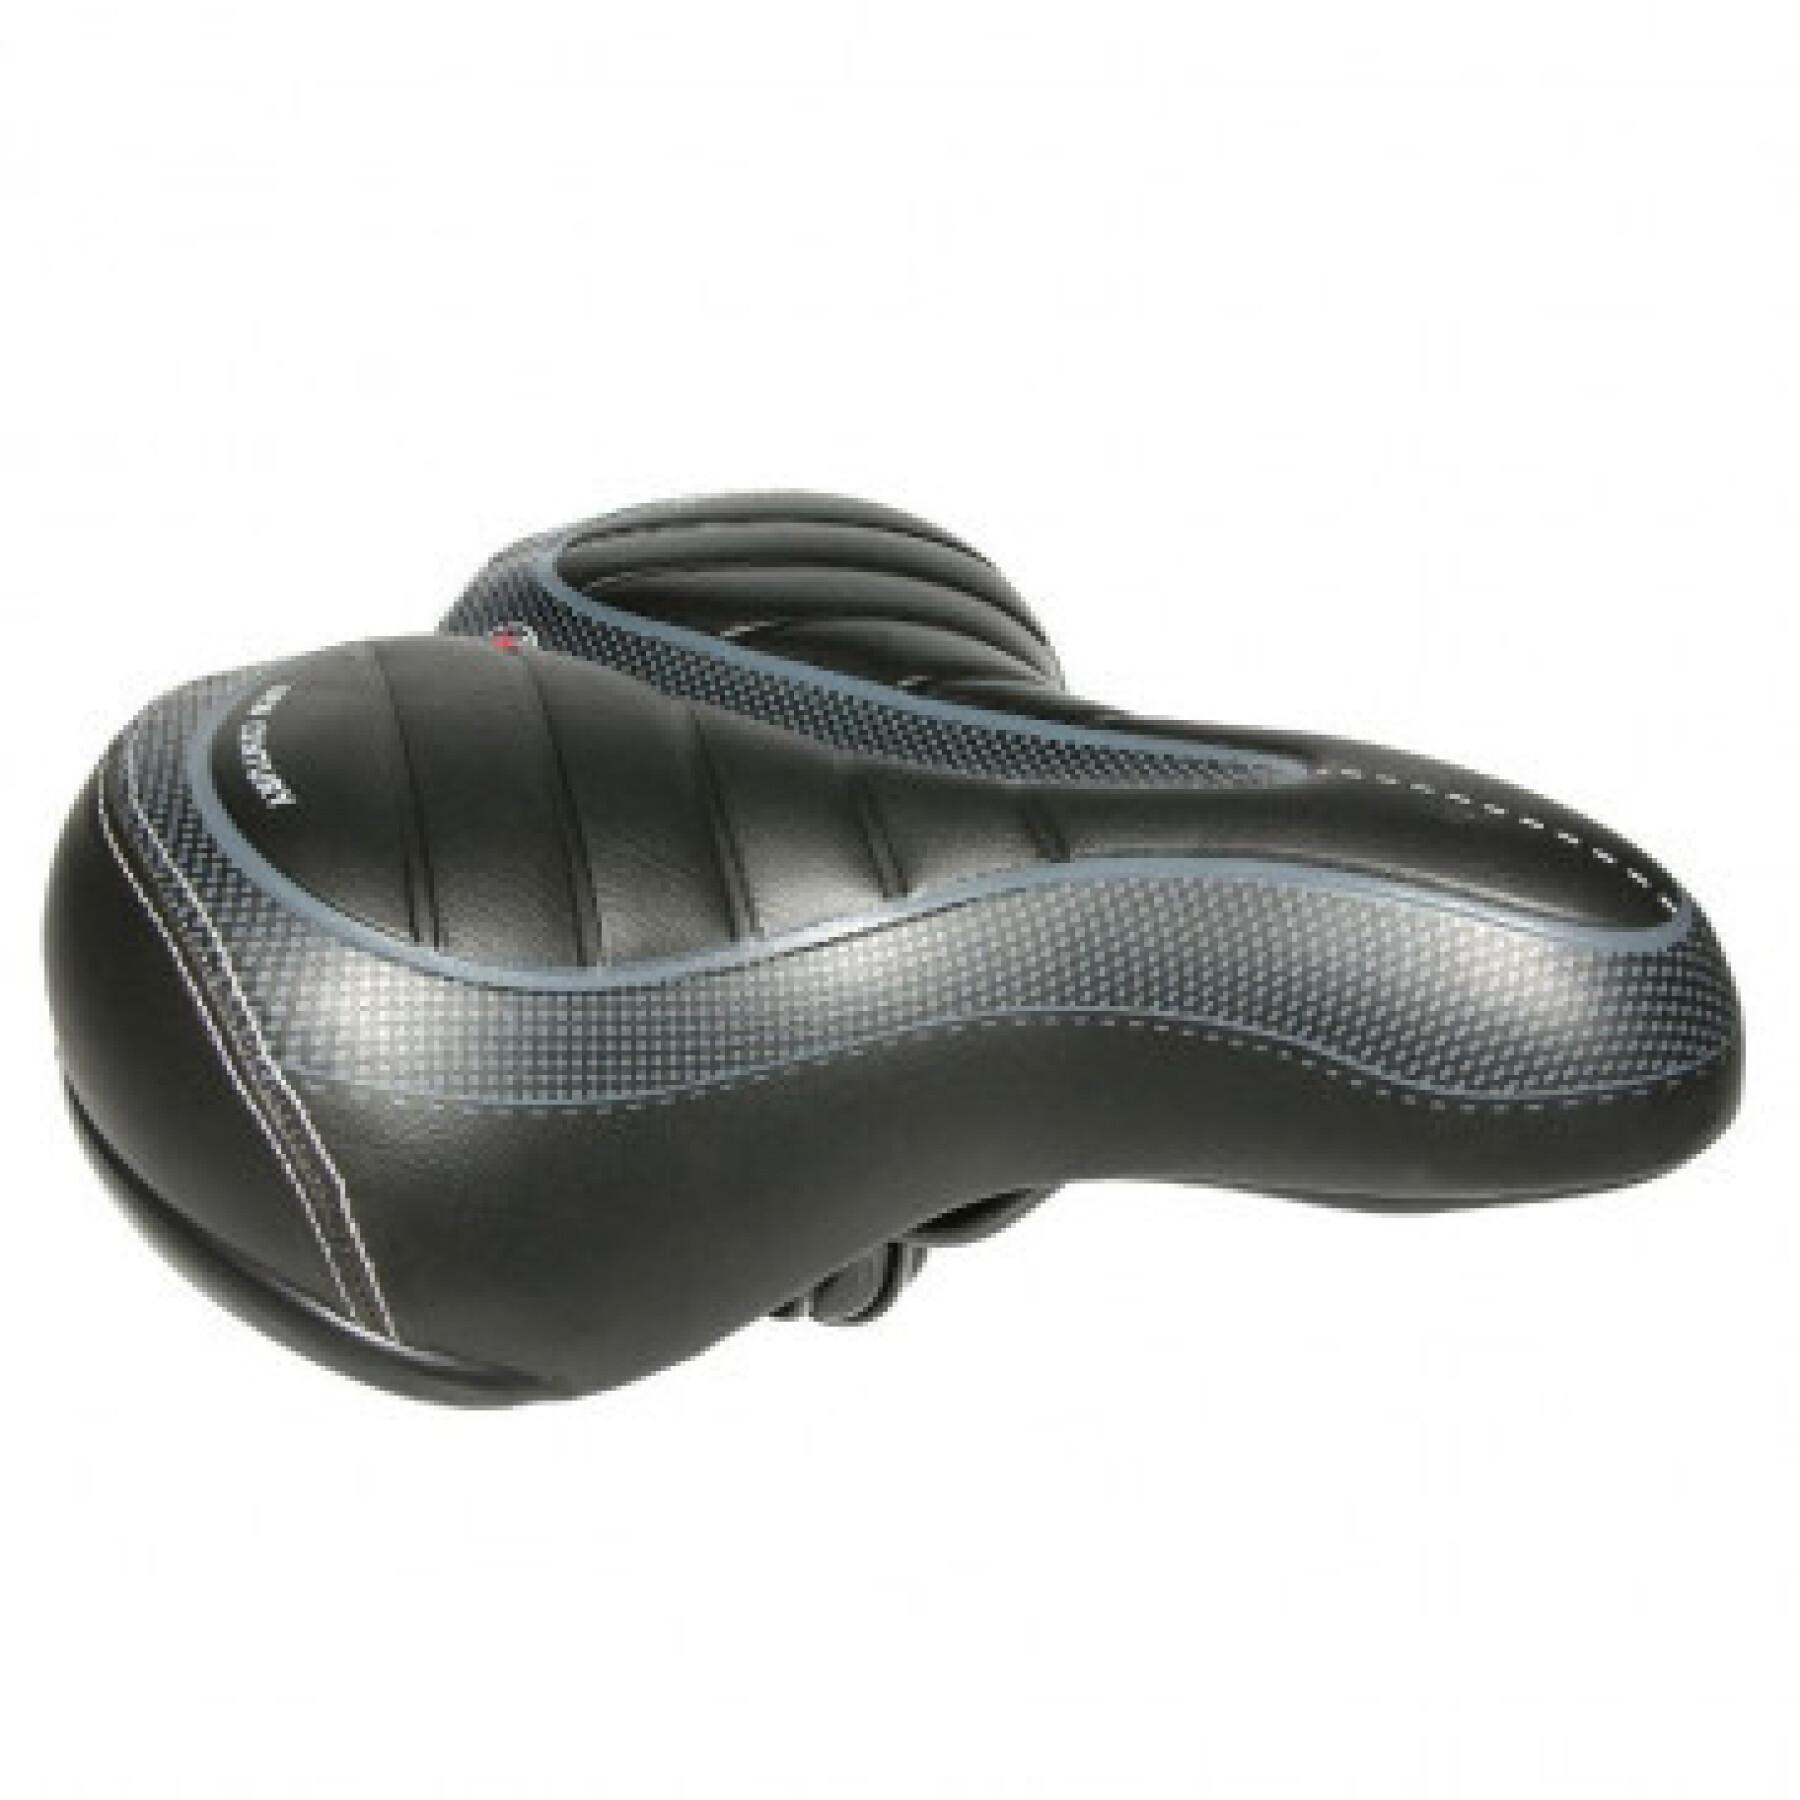 Xinda city maxi komfort sadel med termoformad stålskena P2R New Century